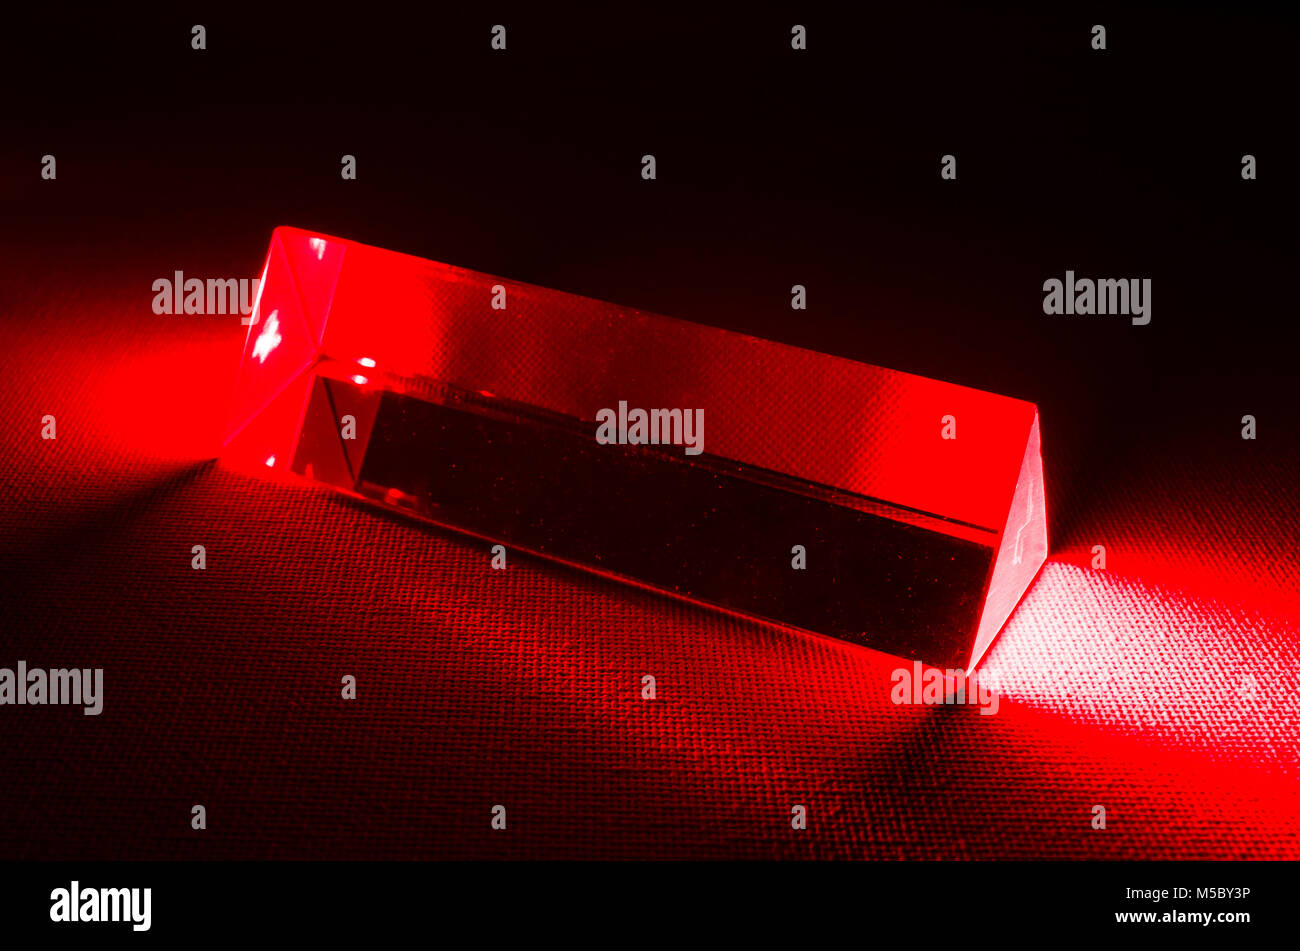 Un estudio bodegón fotografía de un prisma de vidrio triangular con luz roja del láser introduciendo el extremo del prisma Foto de stock